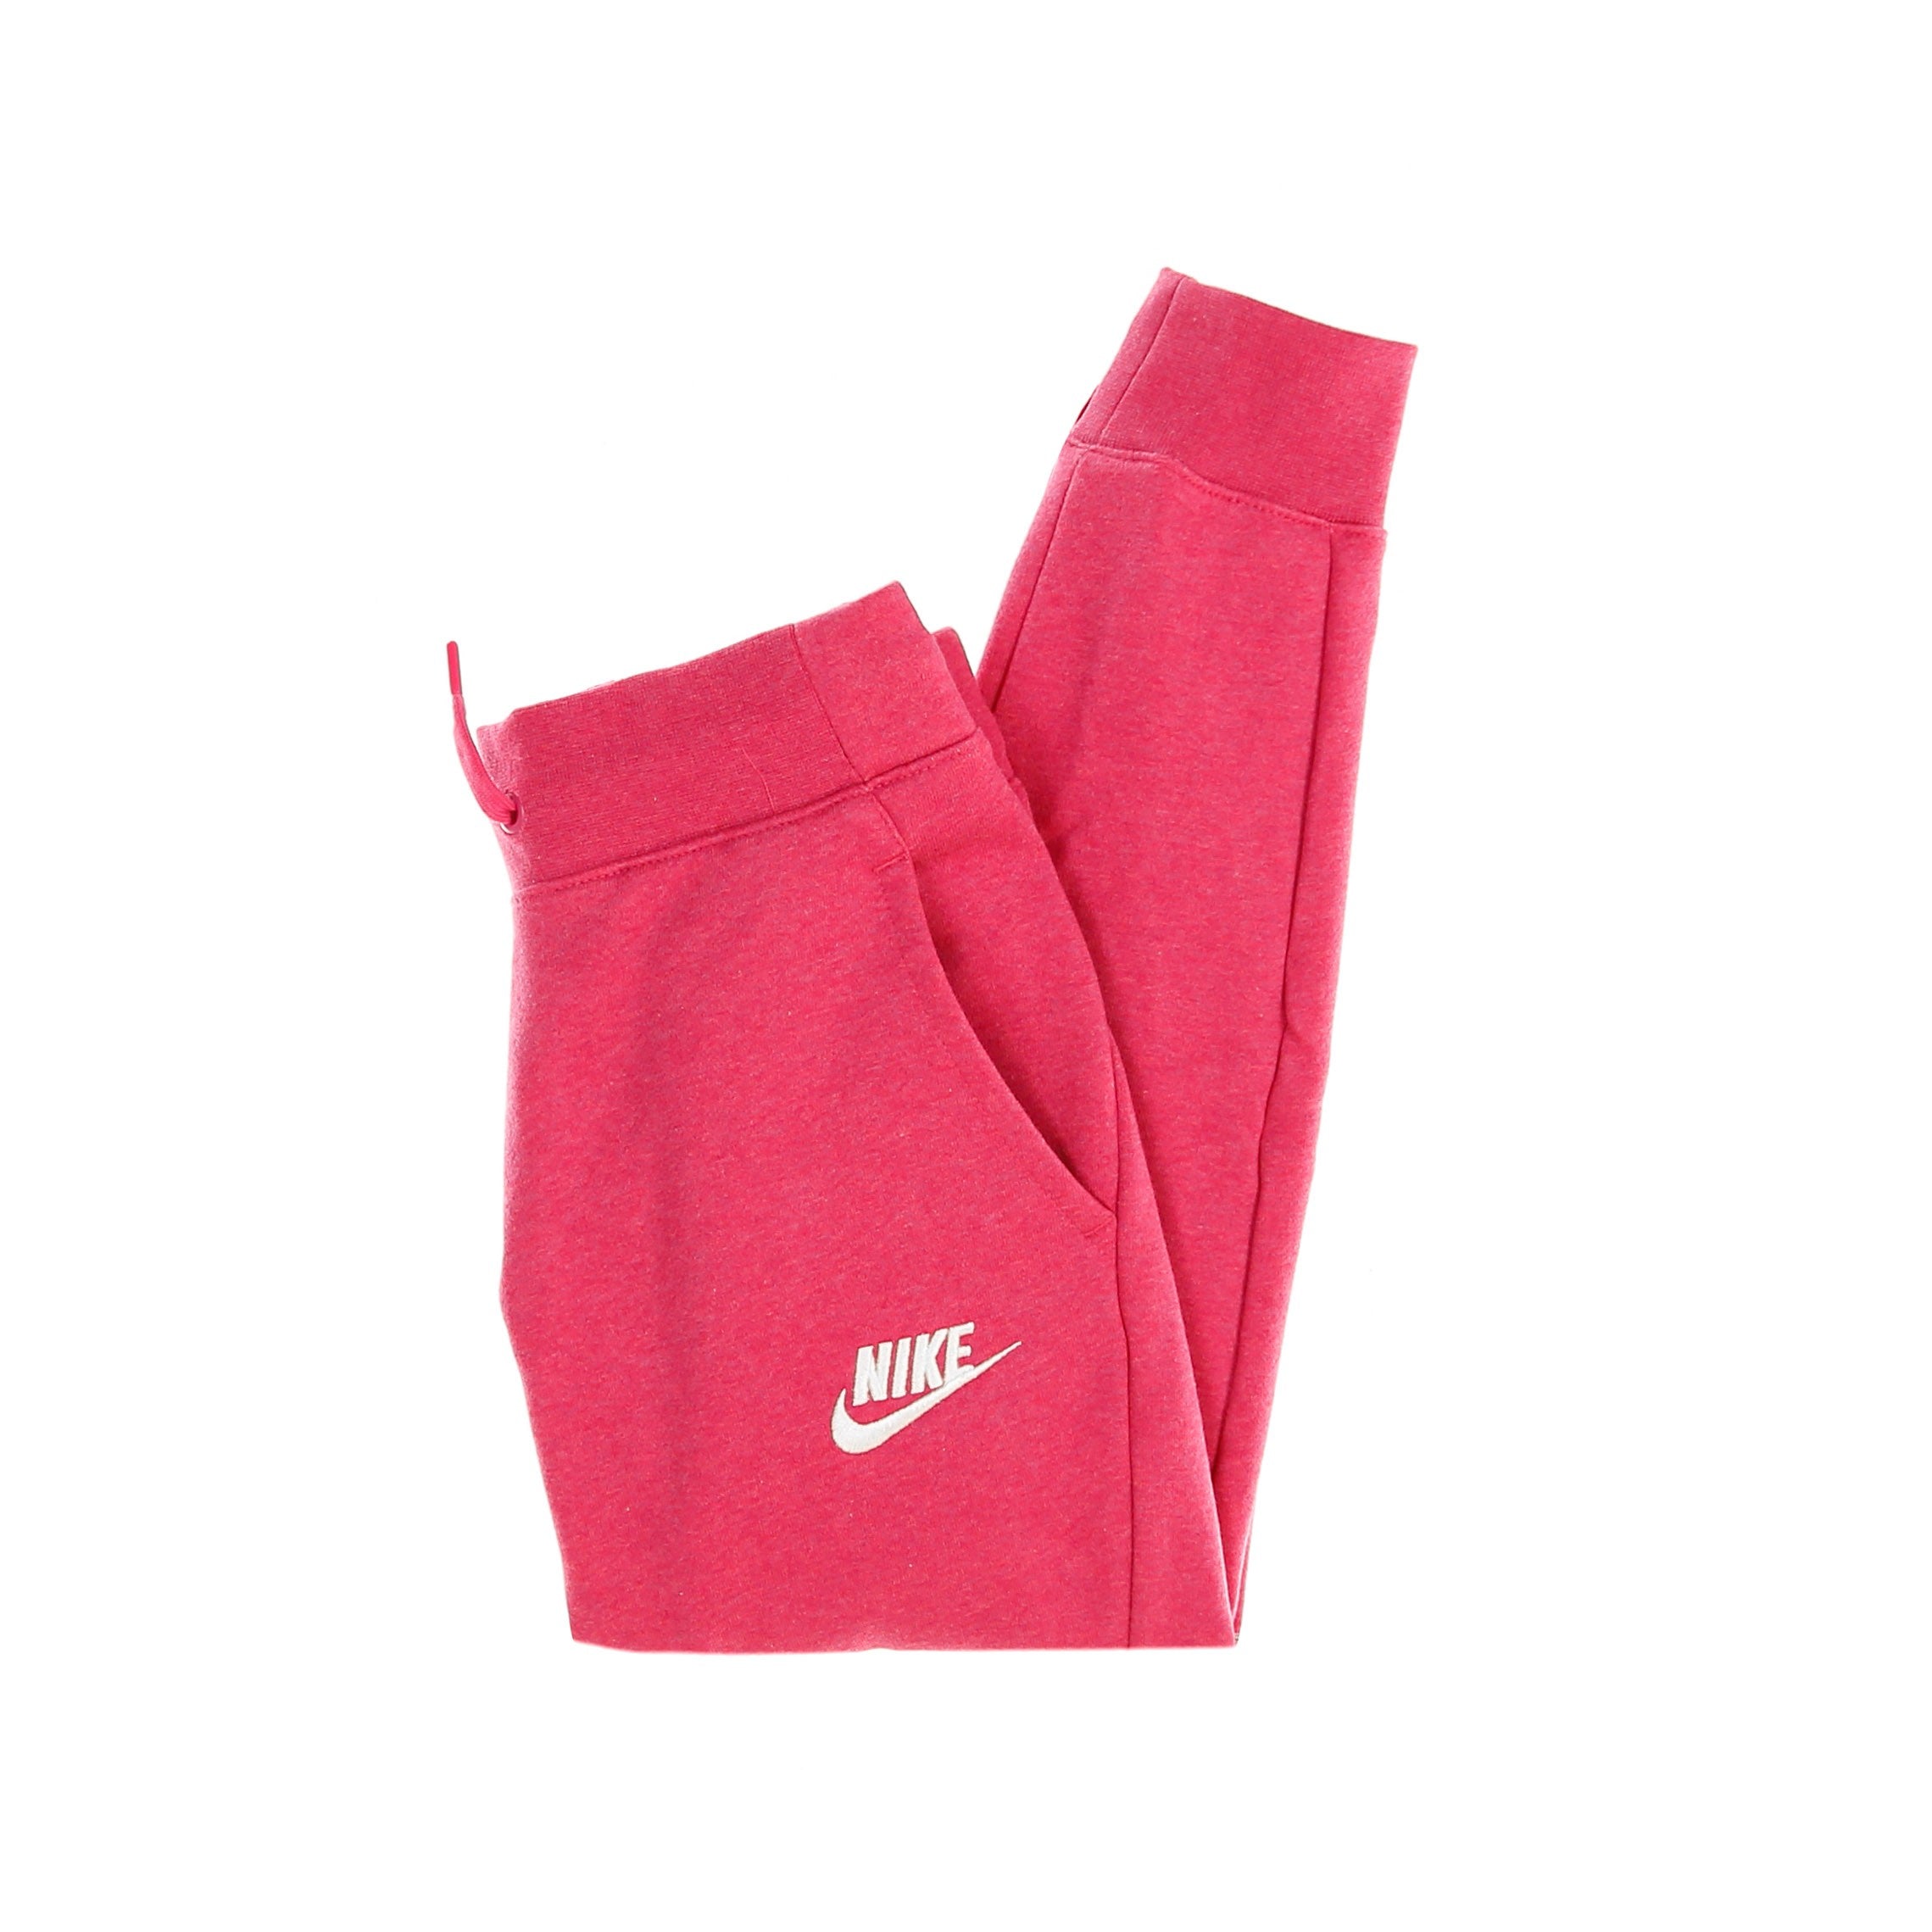 Nike, Pantalone Tuta Felpato Ragazza Sportswear Pant, Fireberry/htr/white